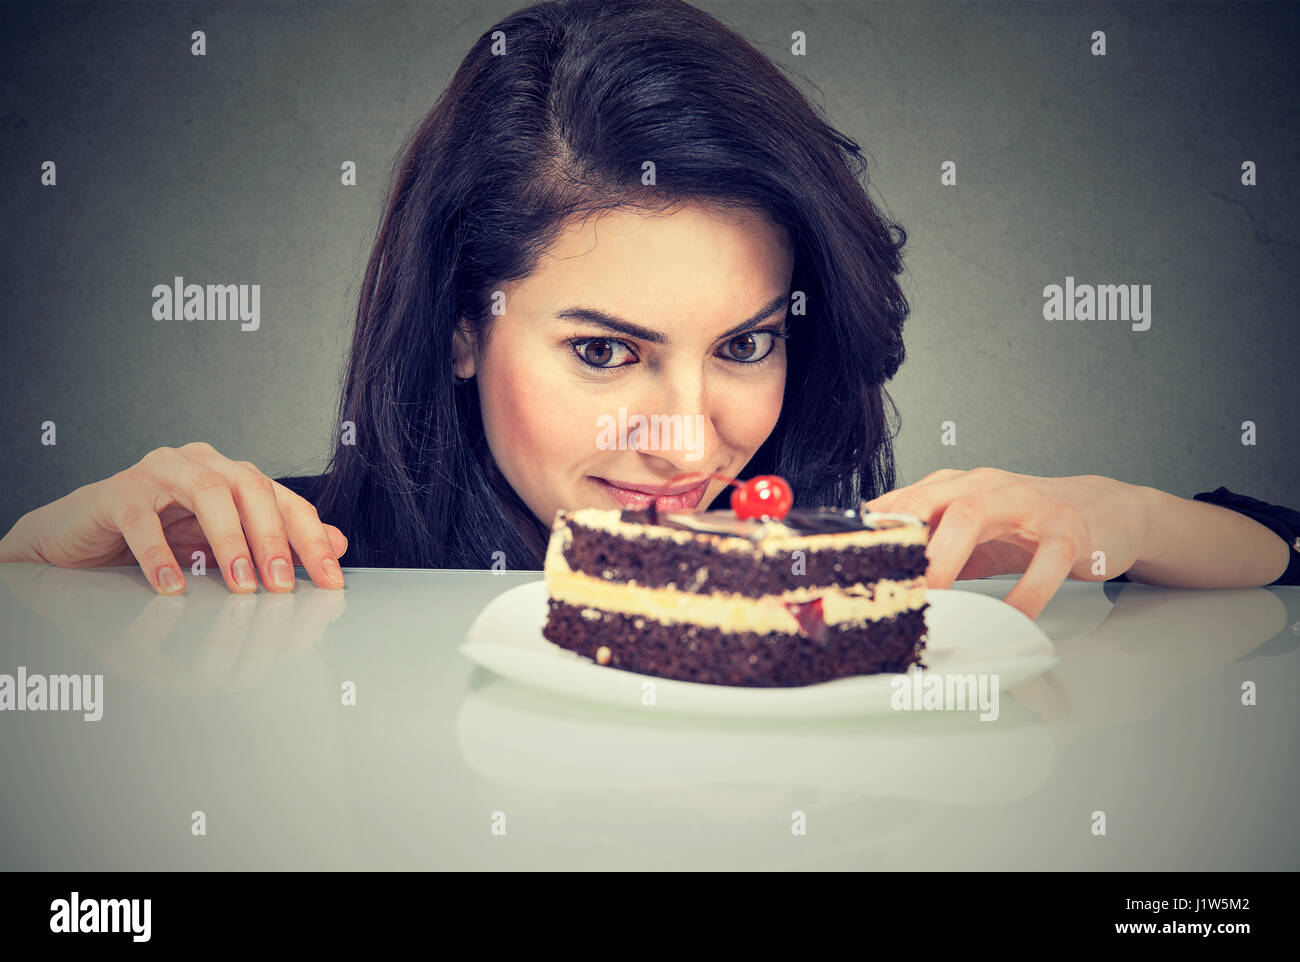 Donna craving dessert torta, desiderosi di mangiare, isolata su uno sfondo grigio Foto Stock